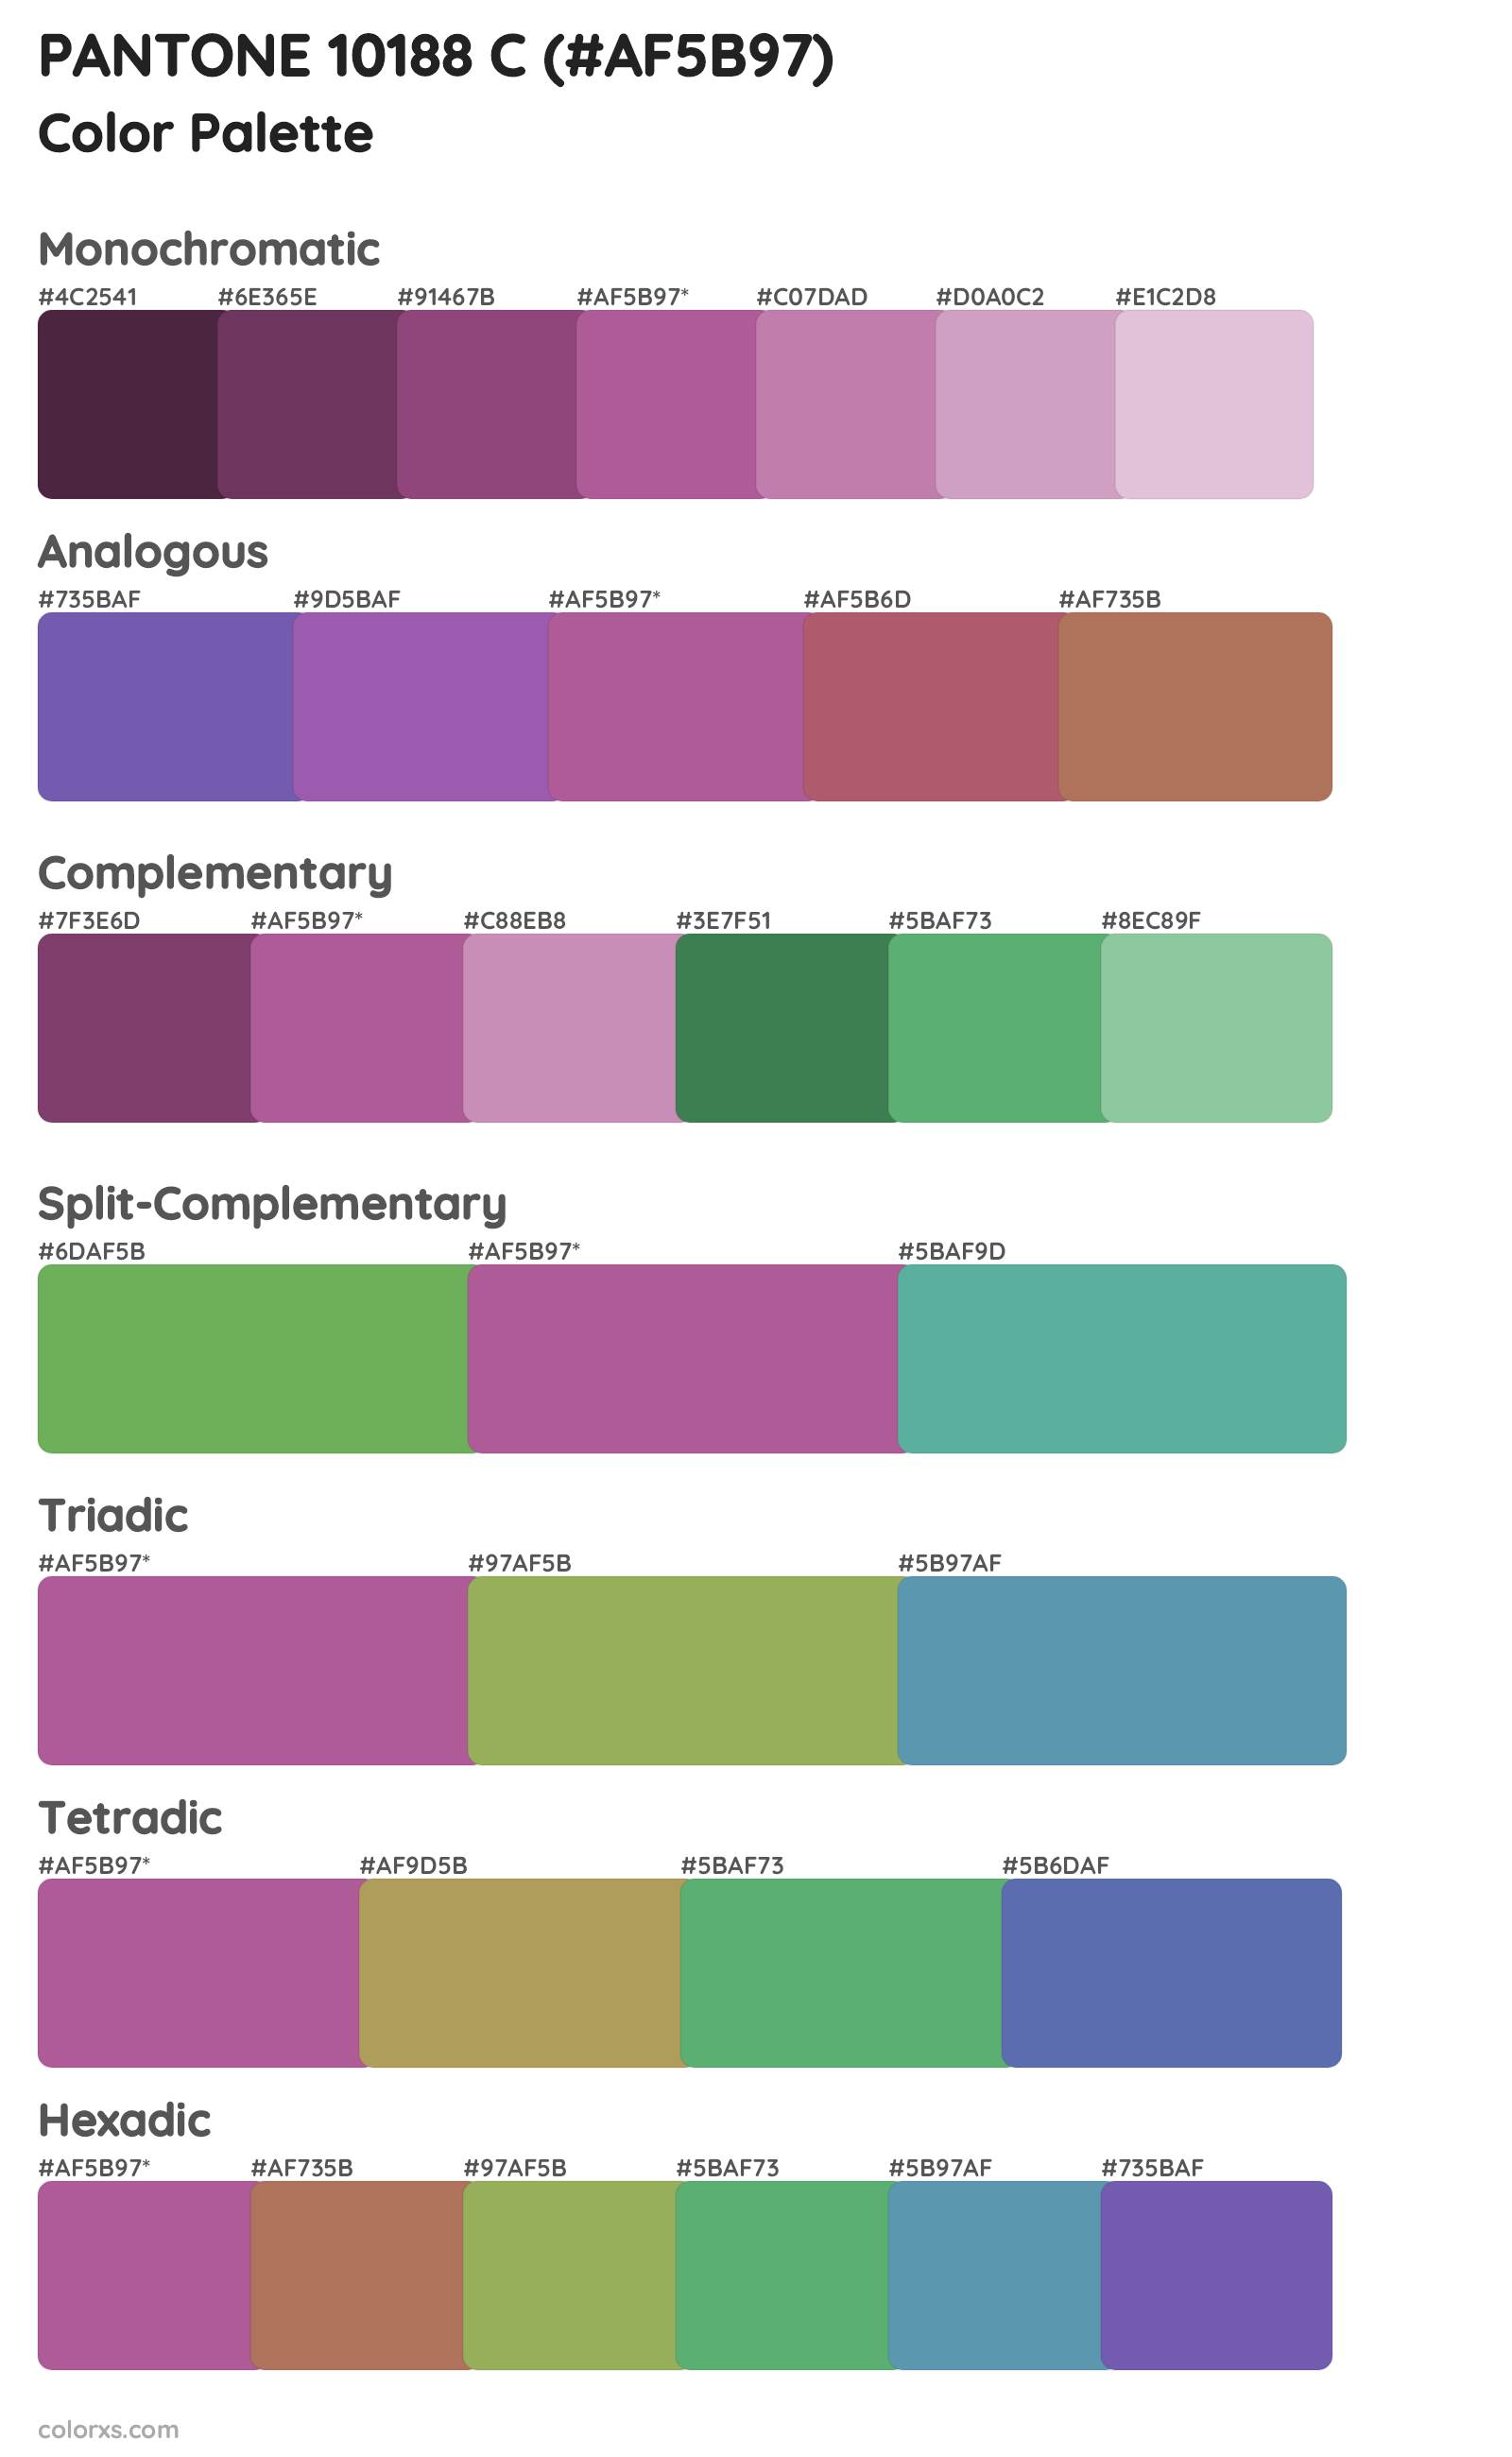 PANTONE 10188 C Color Scheme Palettes